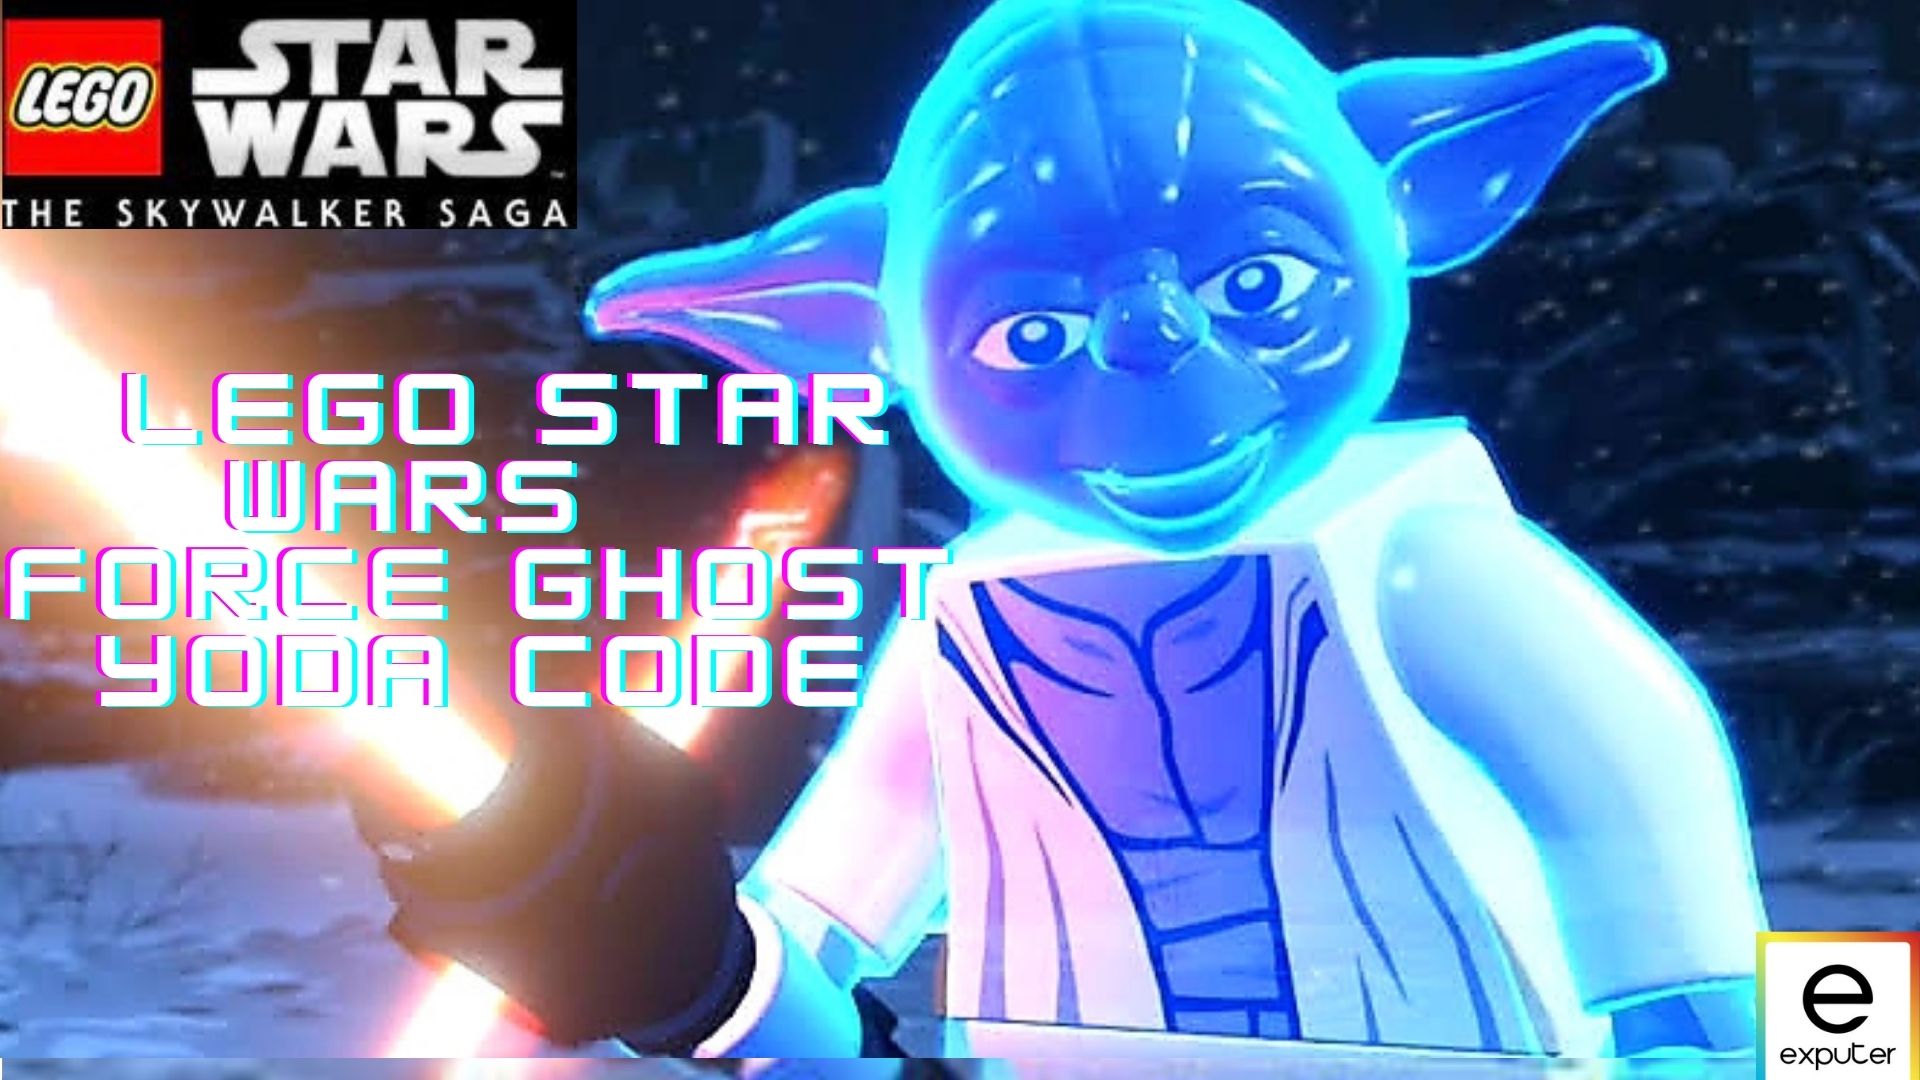 Force Ghost Yoda Code LEGO Star Wars The Skywalker Saga